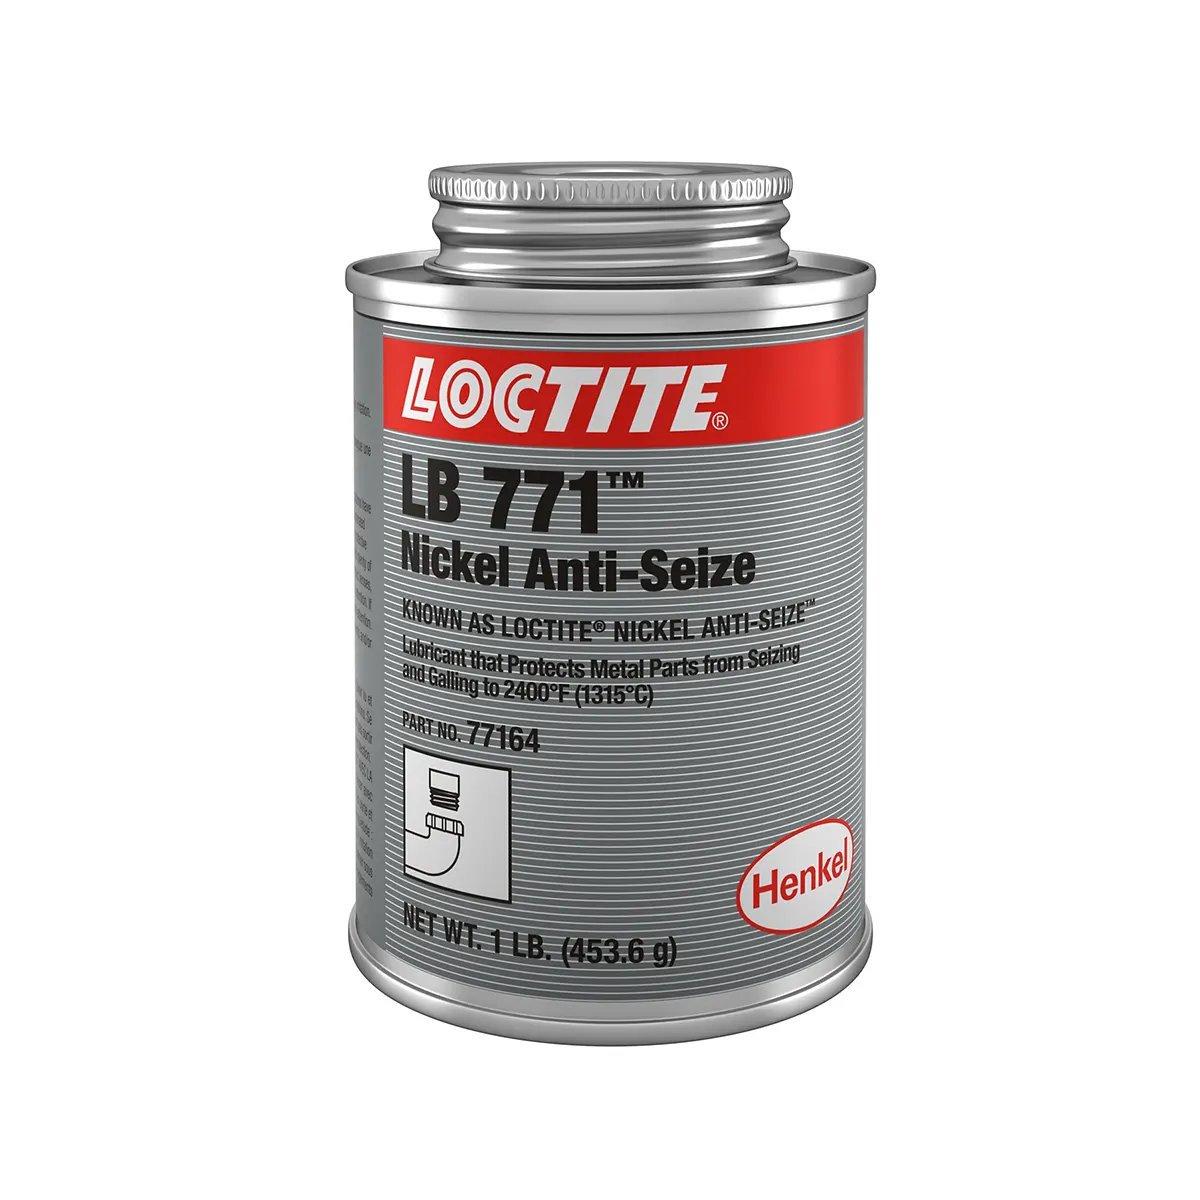 Loctite_LB 771 nickel_as_1lb